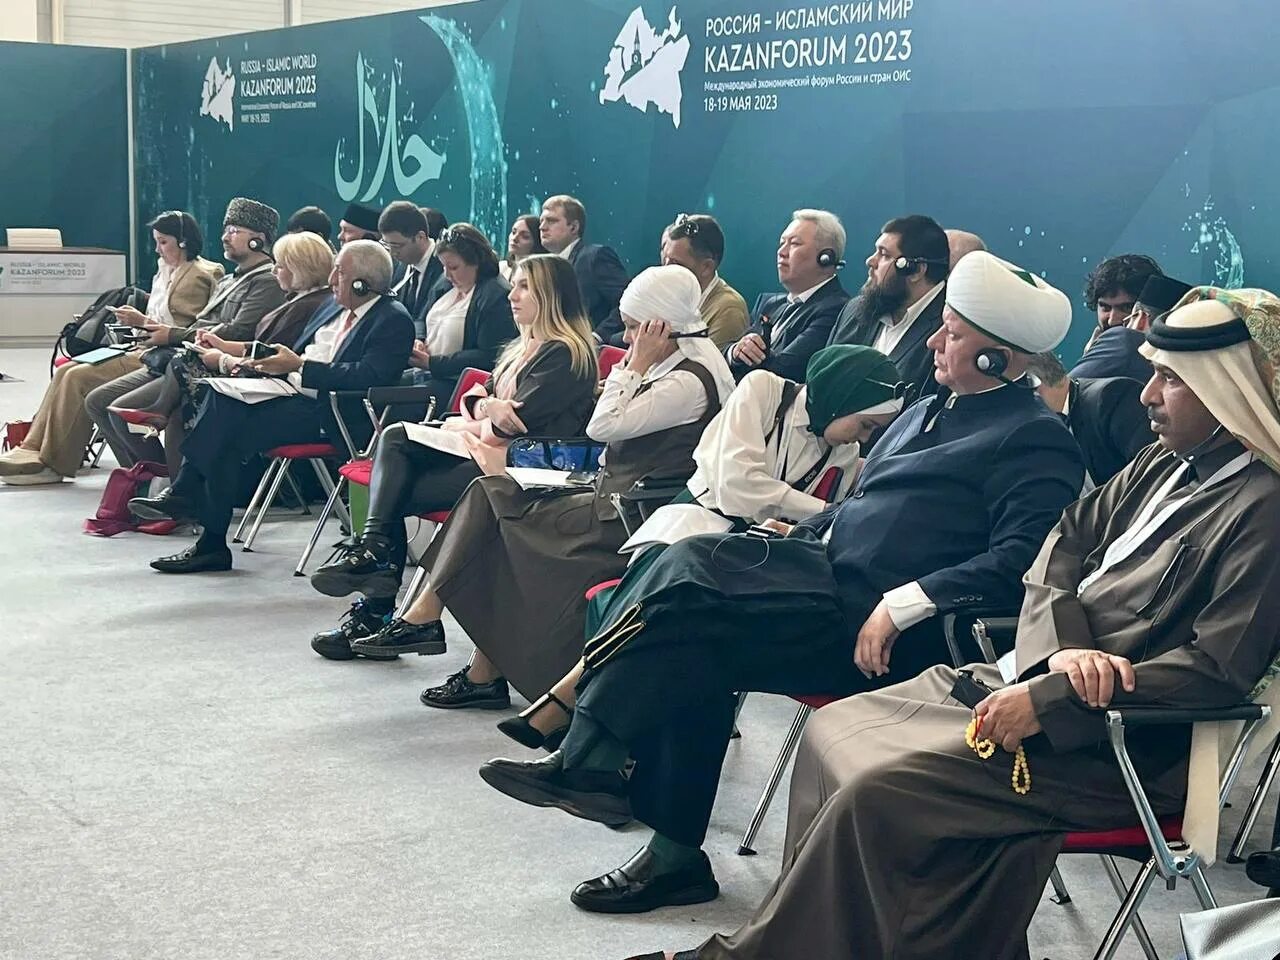 Россия исламский мир kazanforum 2024. Kazanforum 2023 Россия исламский мир выставка. Организация исламская конференция